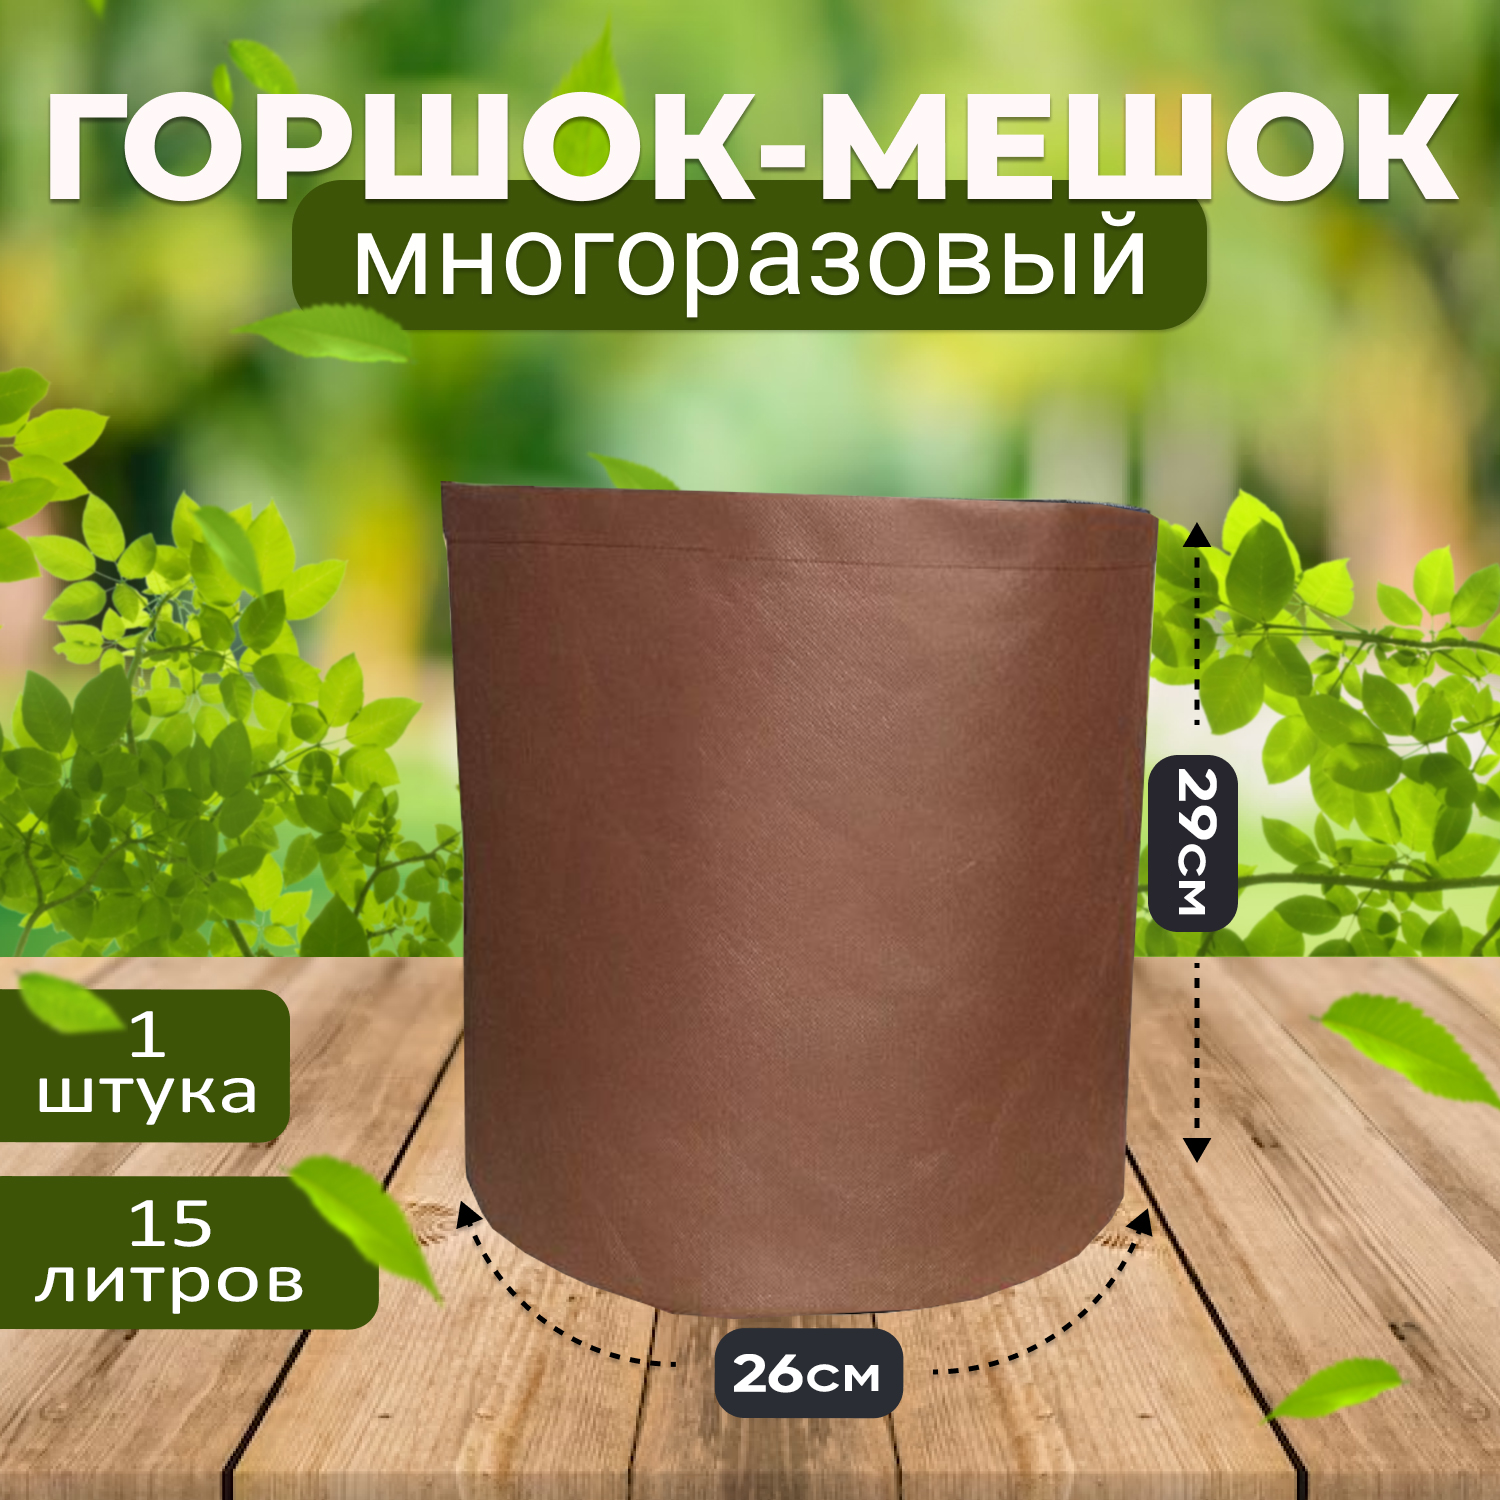 Мешок горшок текстильный Grower Green 15_litrov-Brown 50л., 1шт